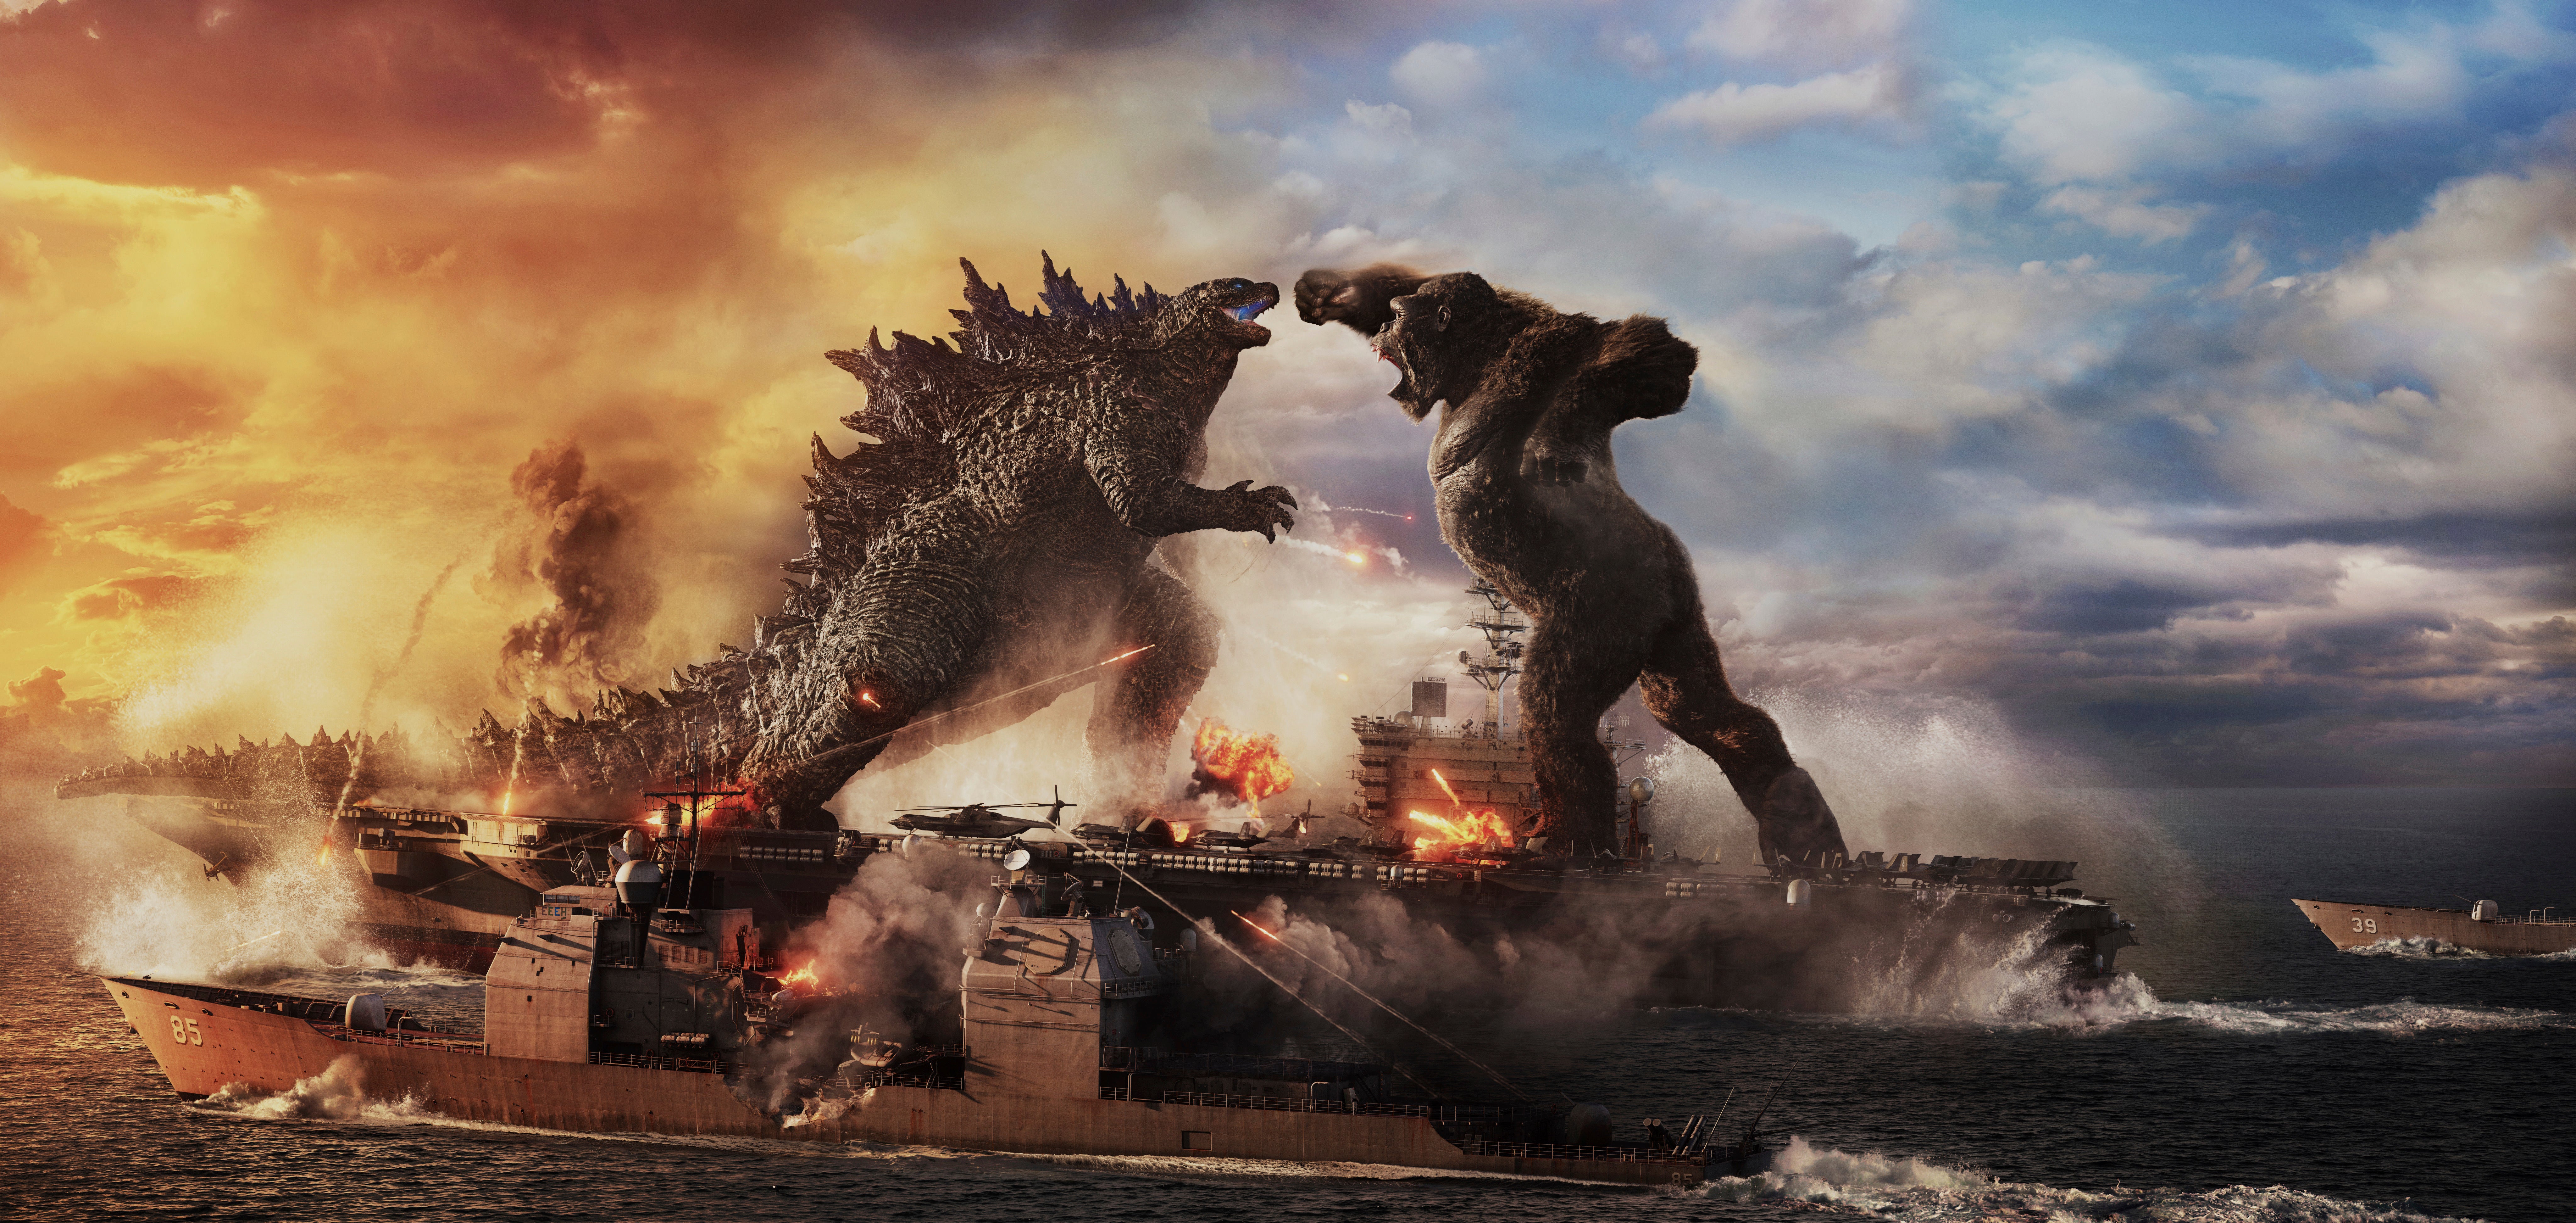 File image: “Godzilla vs. Kong”